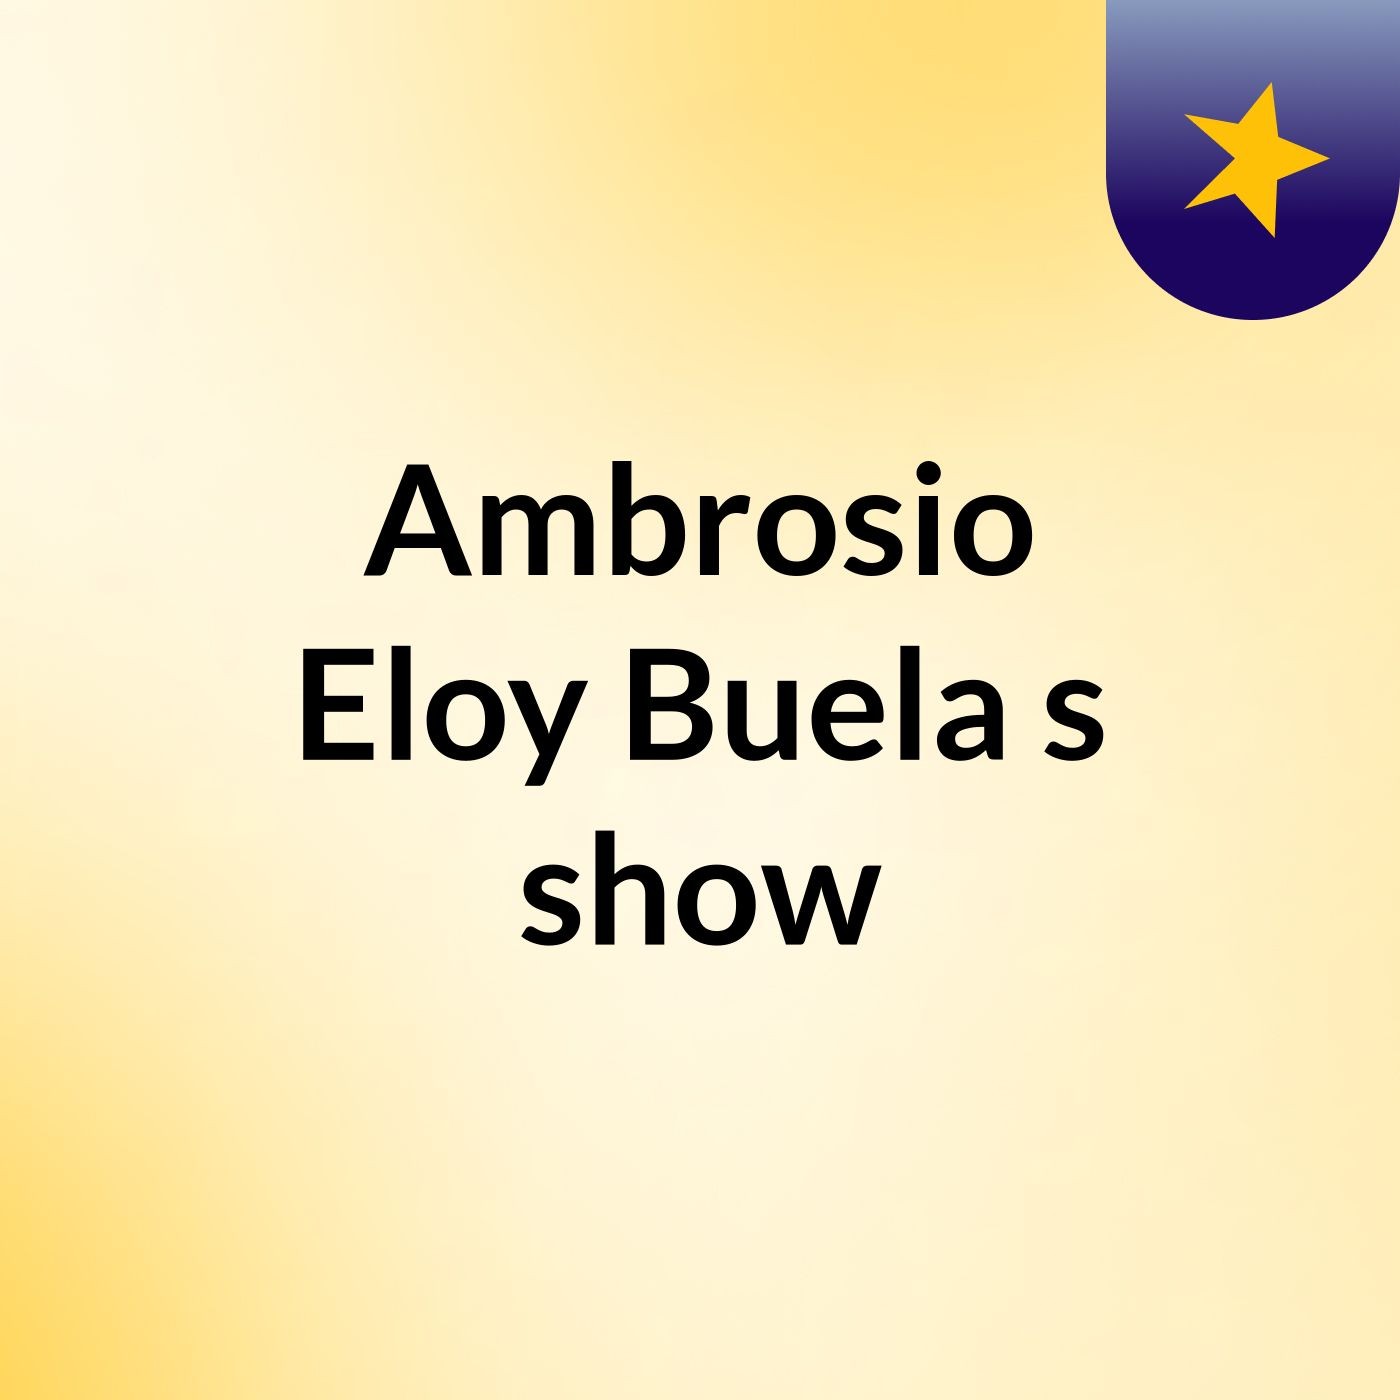 Episode 2 - Ambrosio Eloy Buela's show